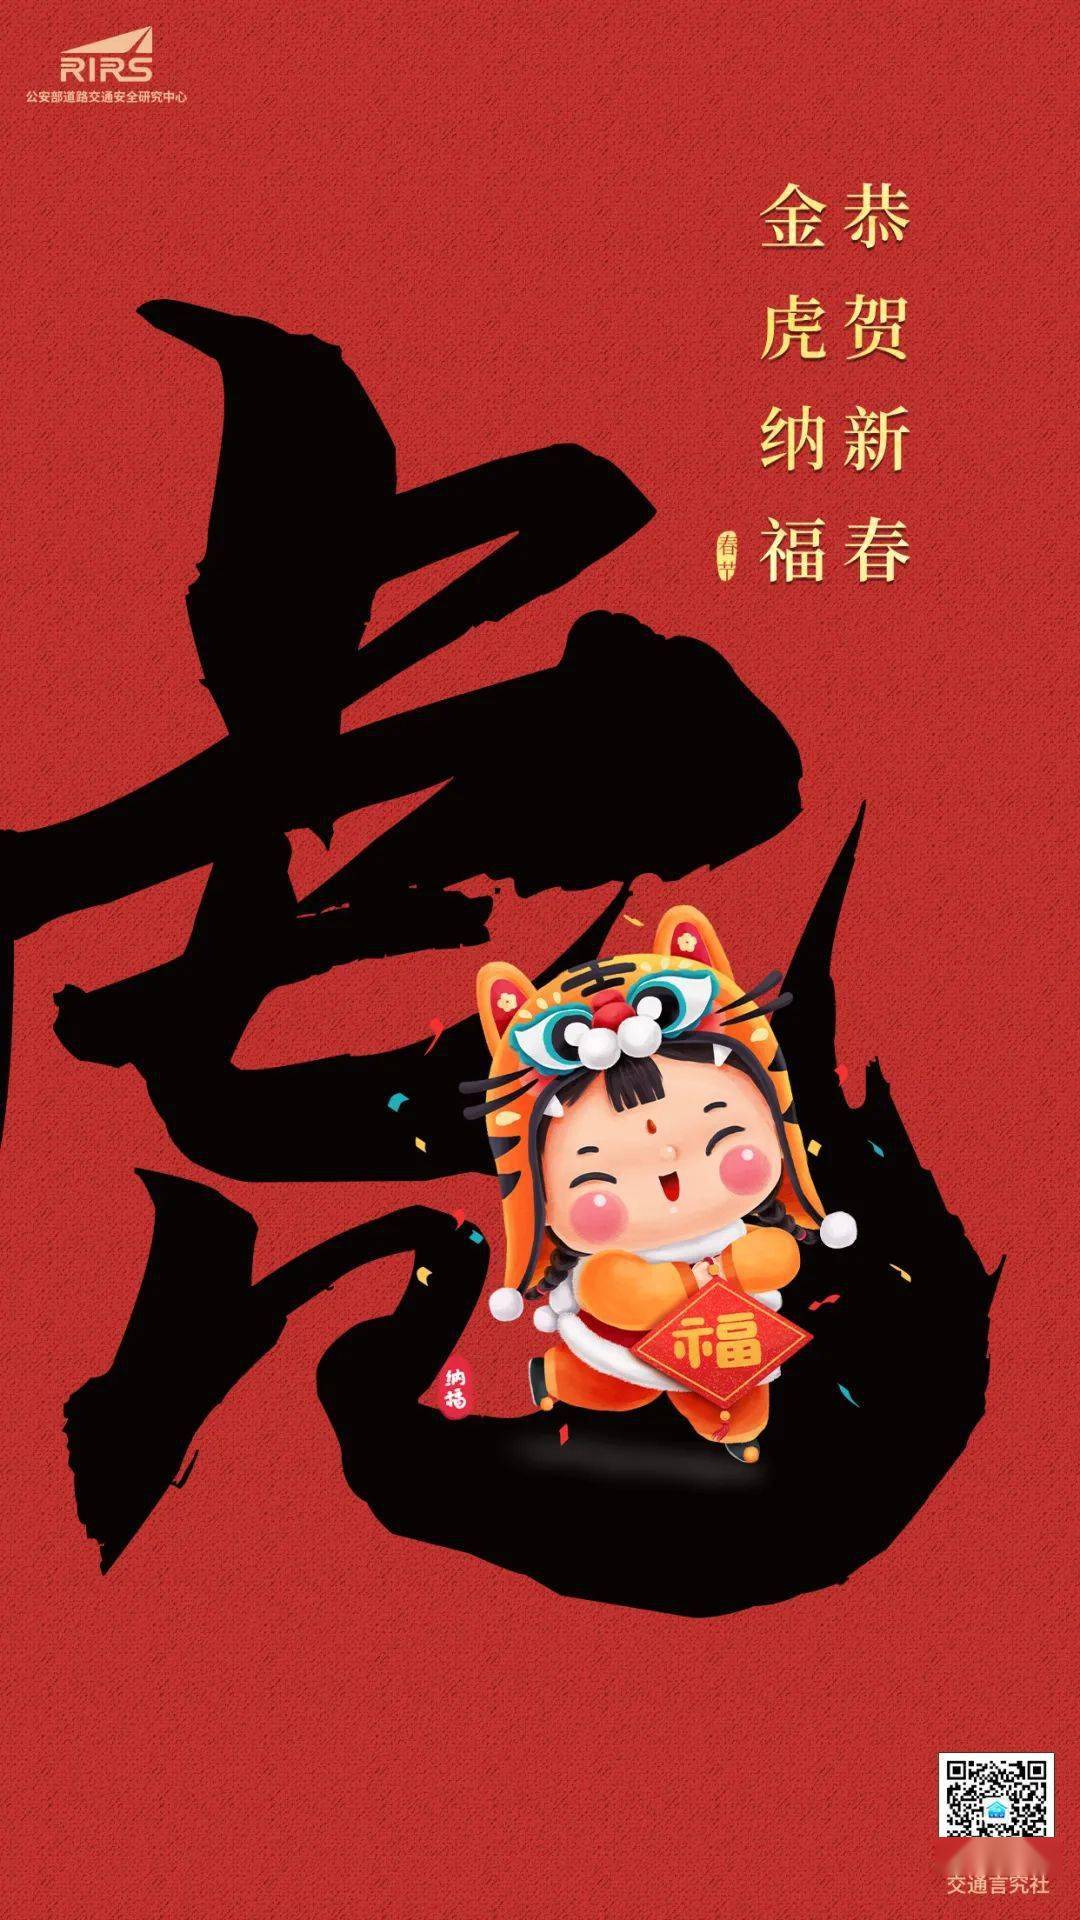 言究,虎年,新春|言究社祝大家新春快乐 虎年大吉！